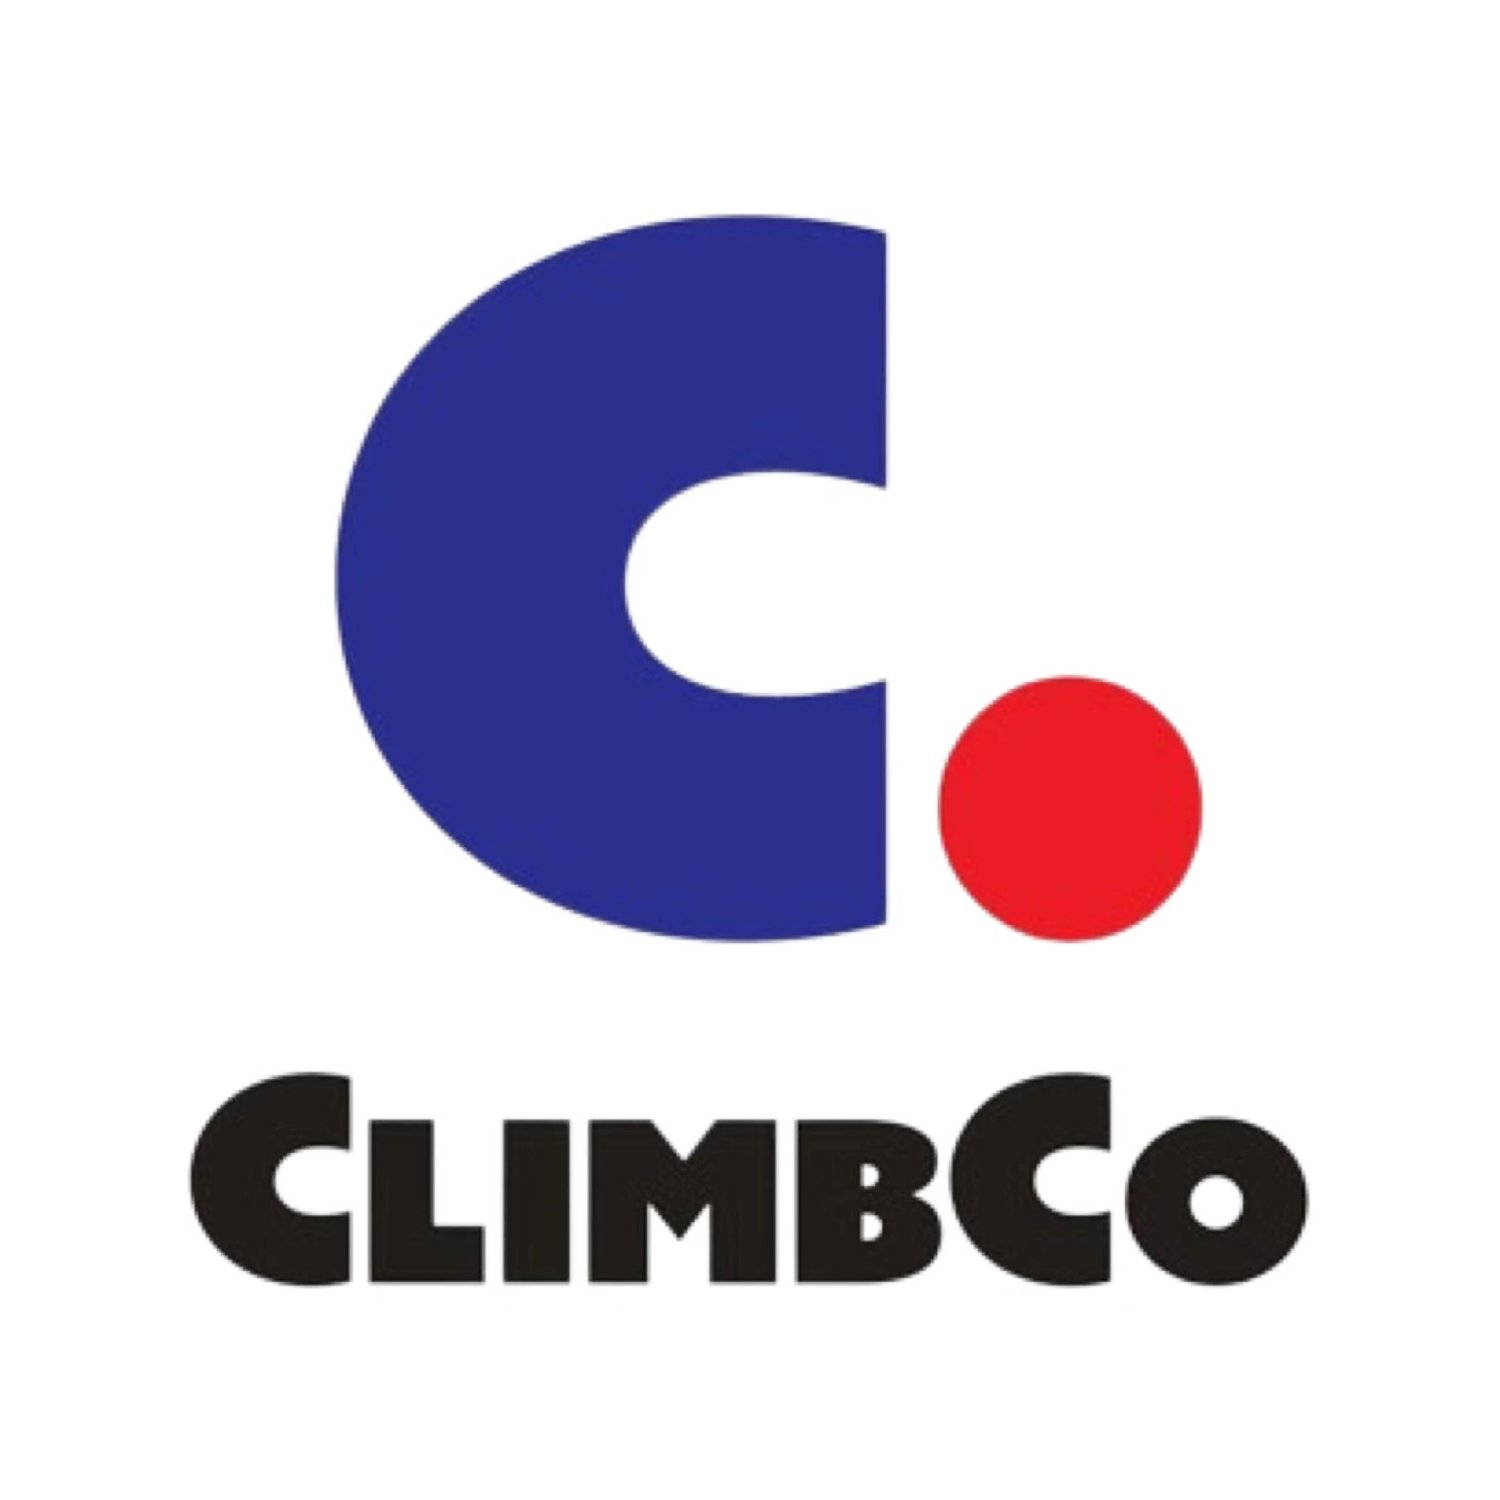 climbco group